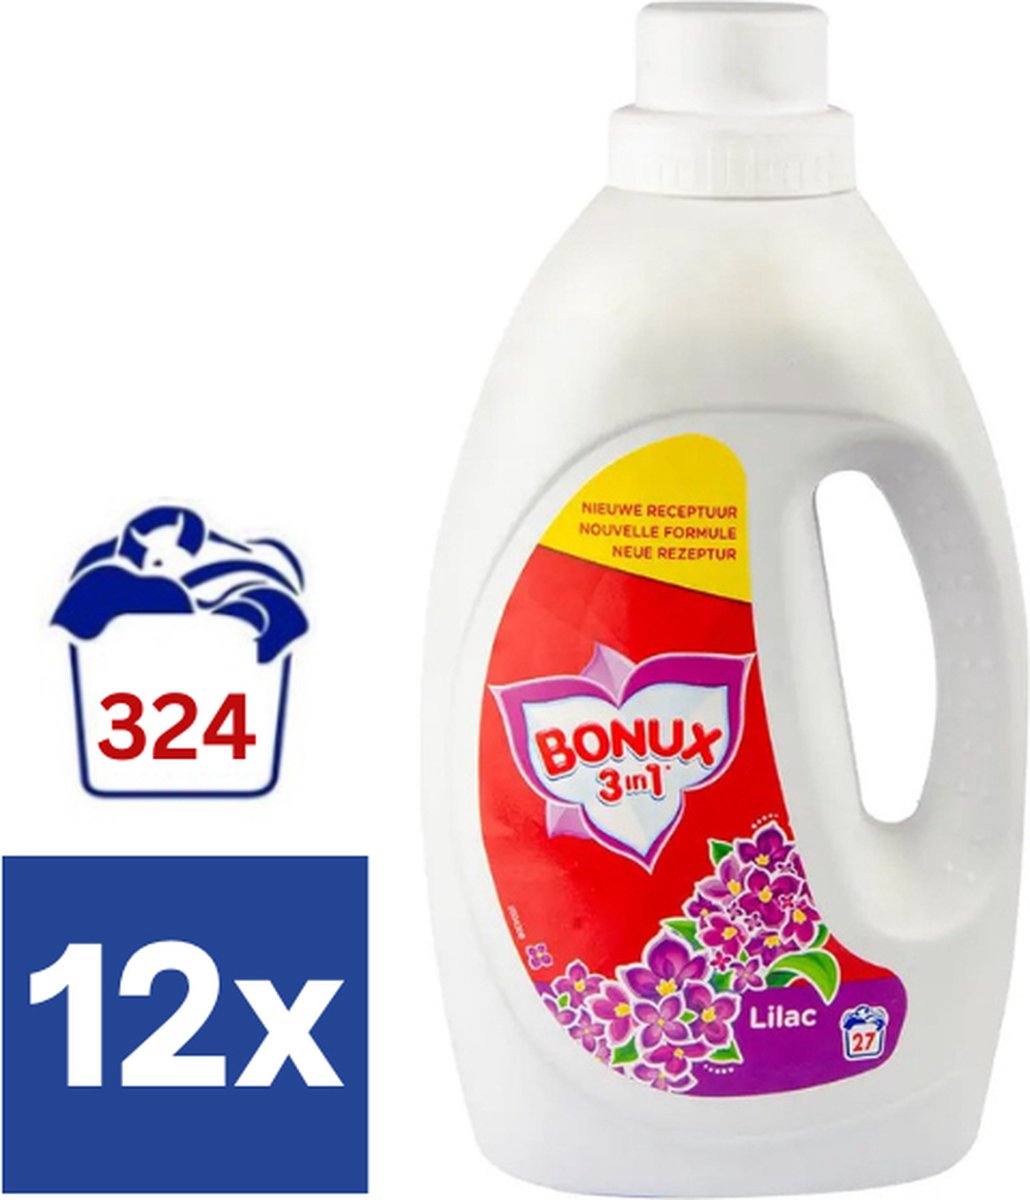 Bonux Lila Vloeibaar Wasmiddel (Voordeelverpakking) - 12 x 1.485 l (324 wasbeurten)